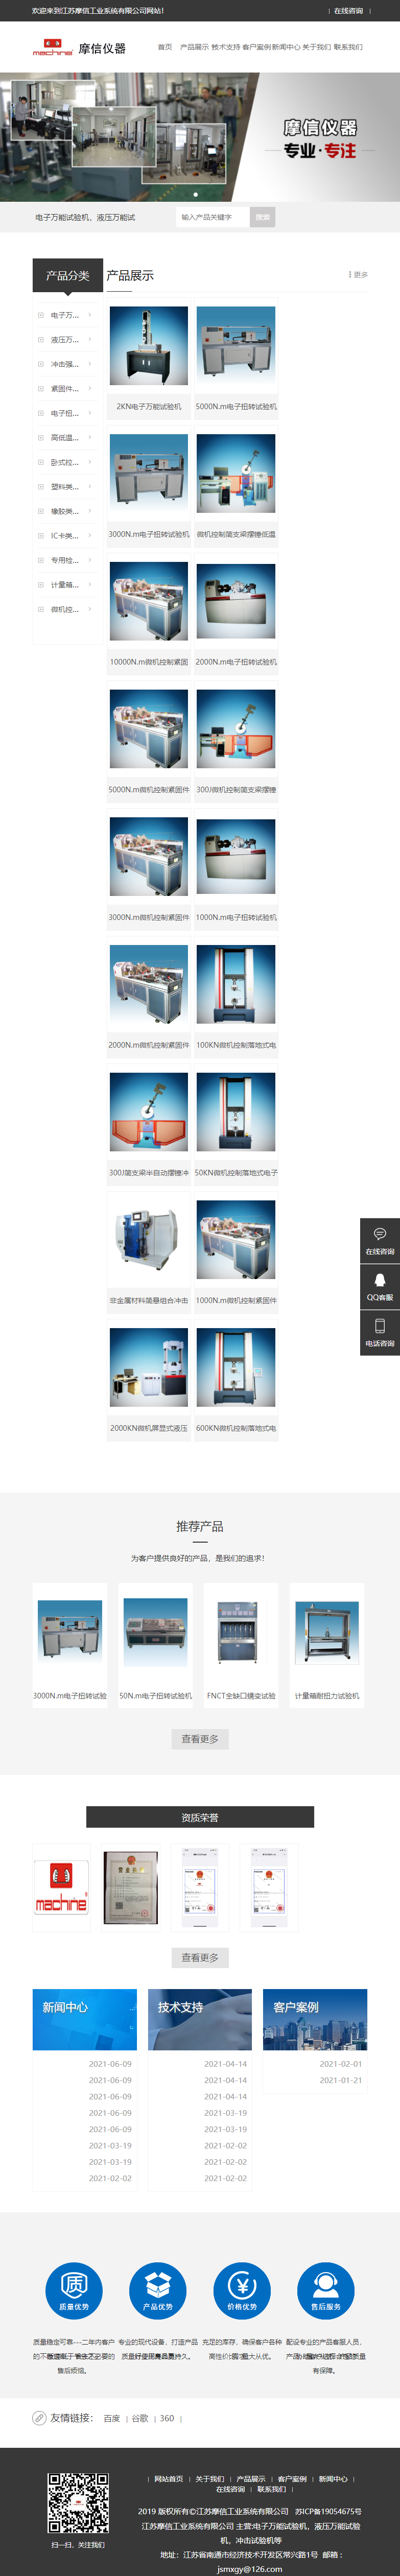 江苏摩信工业系统有限公司网站案例